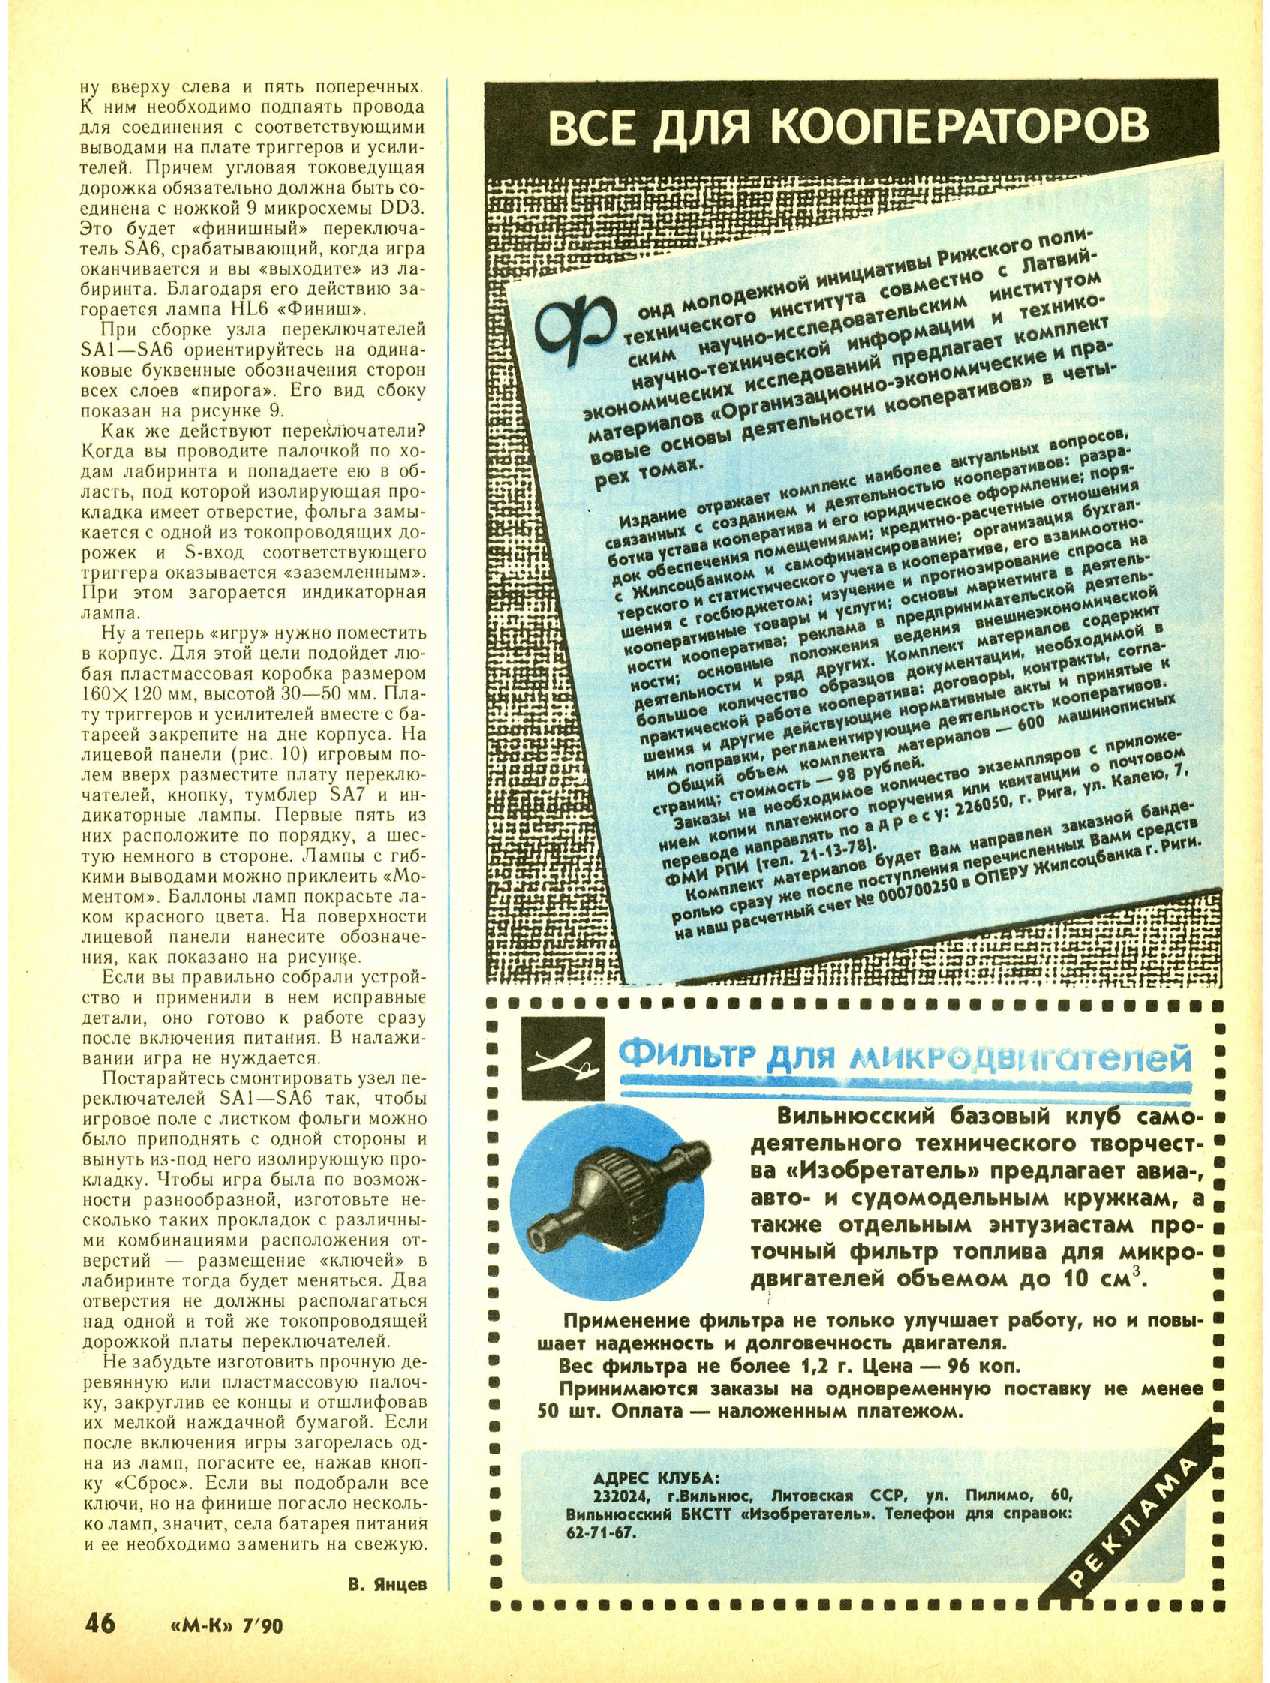 МК 7, 1990, 46 c.